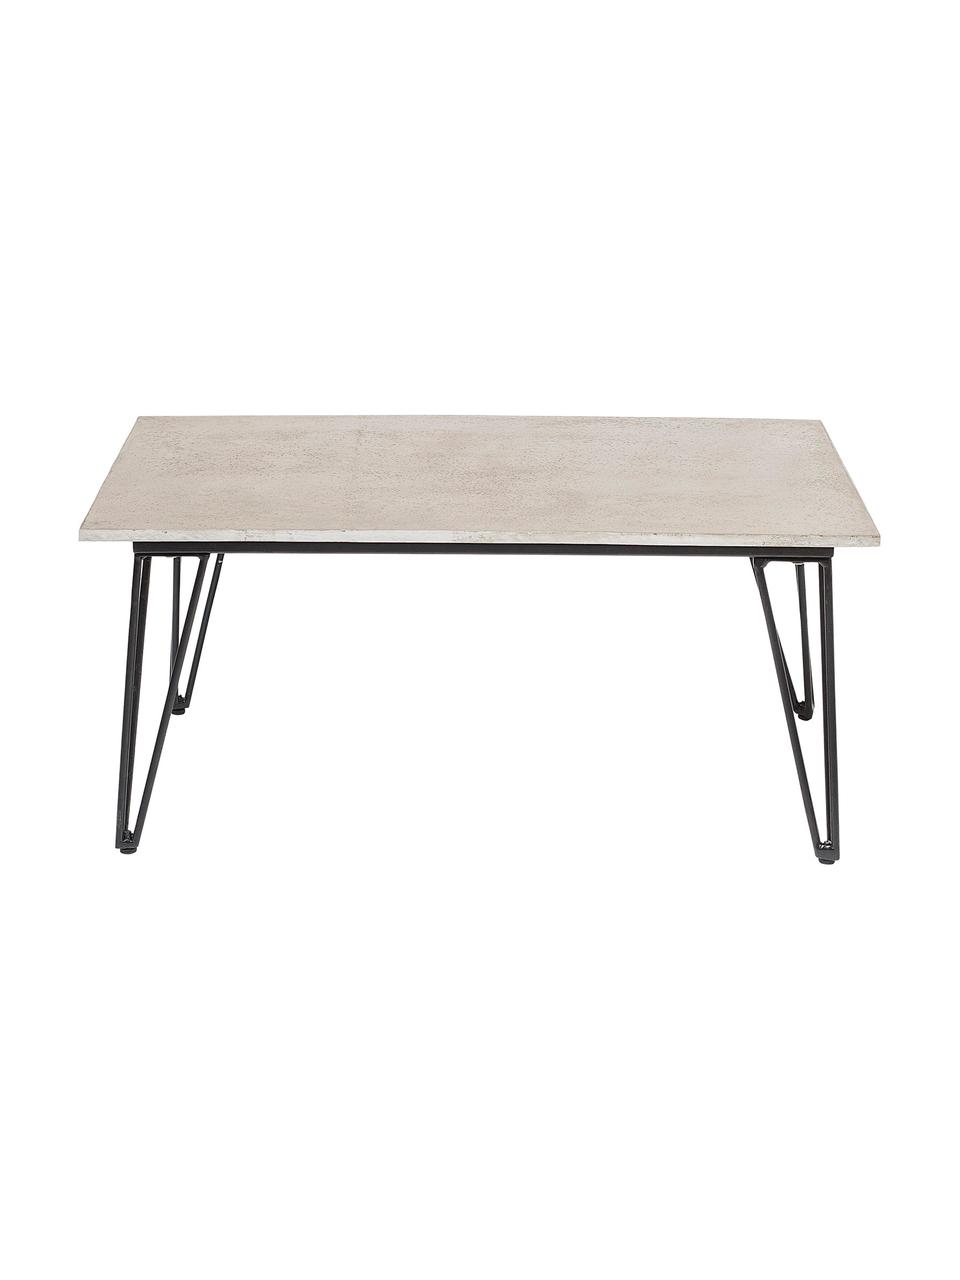 Ogrodowy stolik pomocniczy Mundo, Blat: beton, Nogi: metal powlekany, Szary, czarny, S 90 x G 60 cm